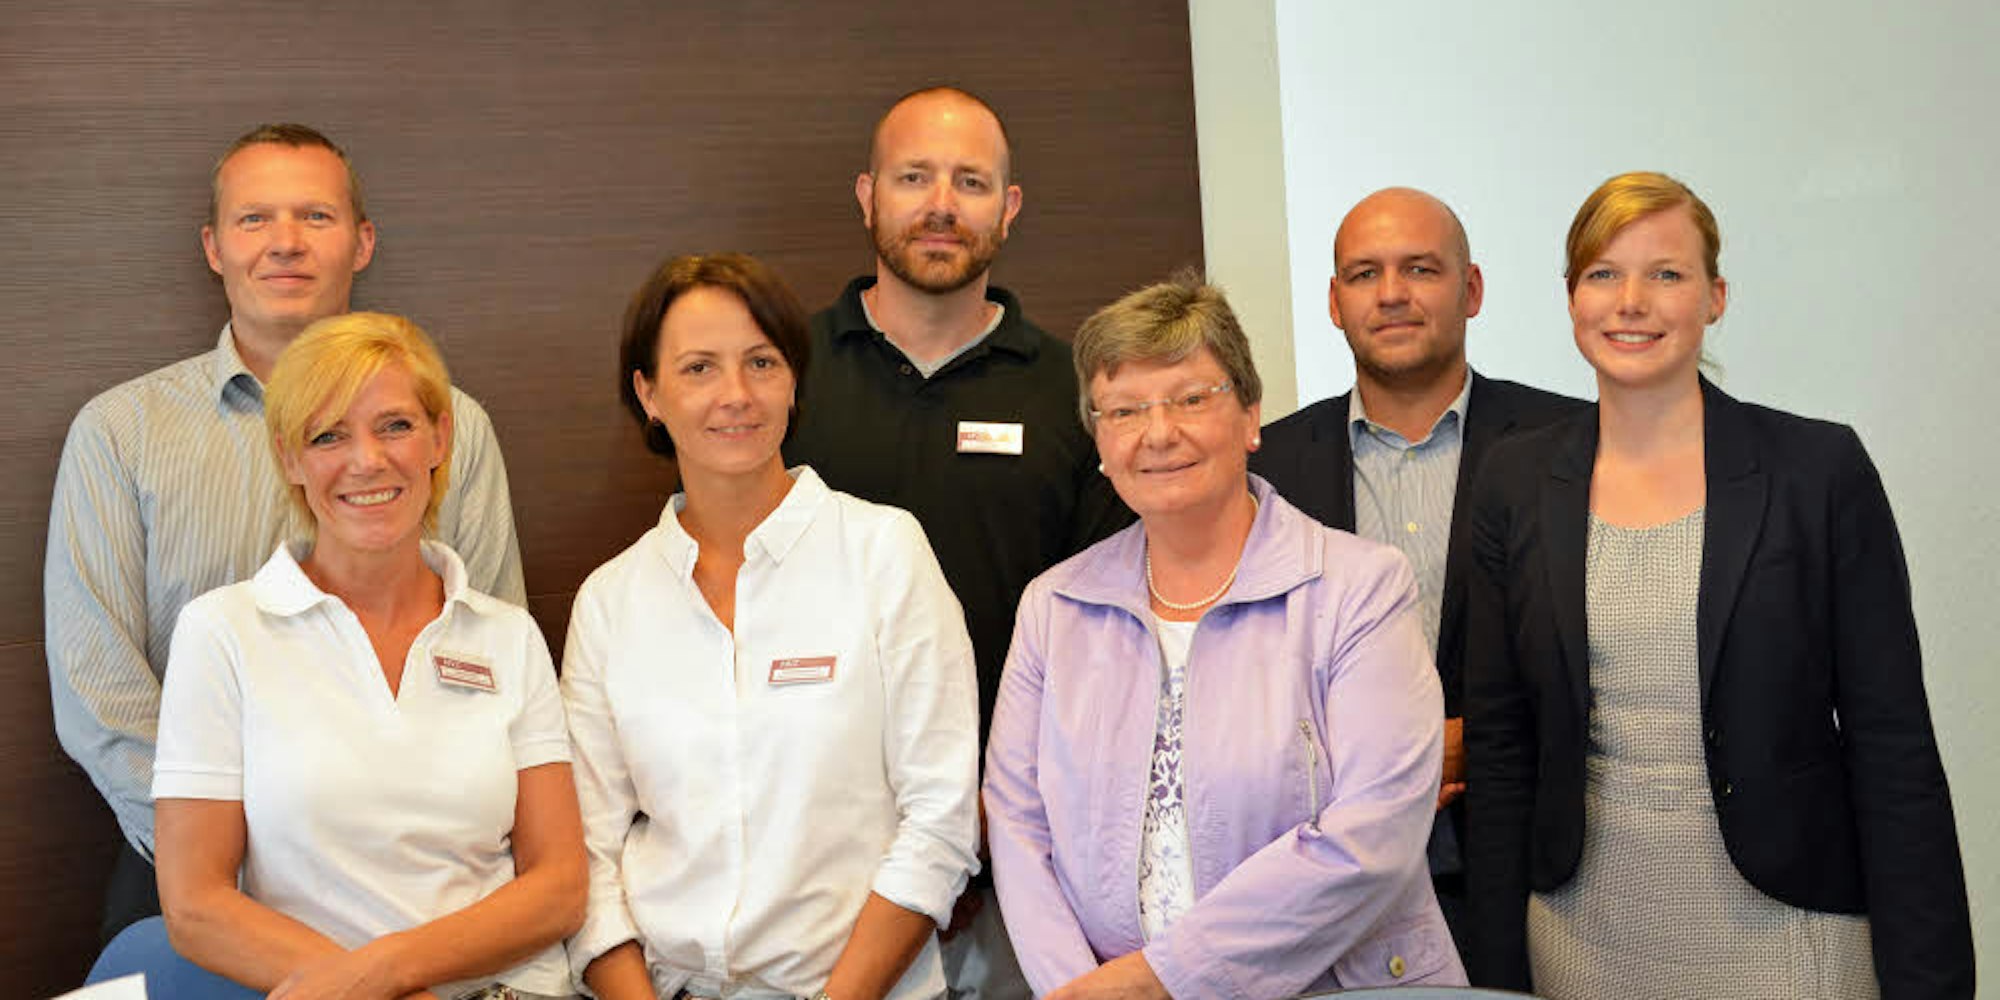 Team und Geschäftsführung des MVZ: Andrea Preuß, Andrea Wippenbeck, Dr. Ulrike Feik (vorne, v.l.), dahinter Dr. Volkart Rolf, Thomas Menken, Johannes Grundmann und Daniela Levy (v.l.).